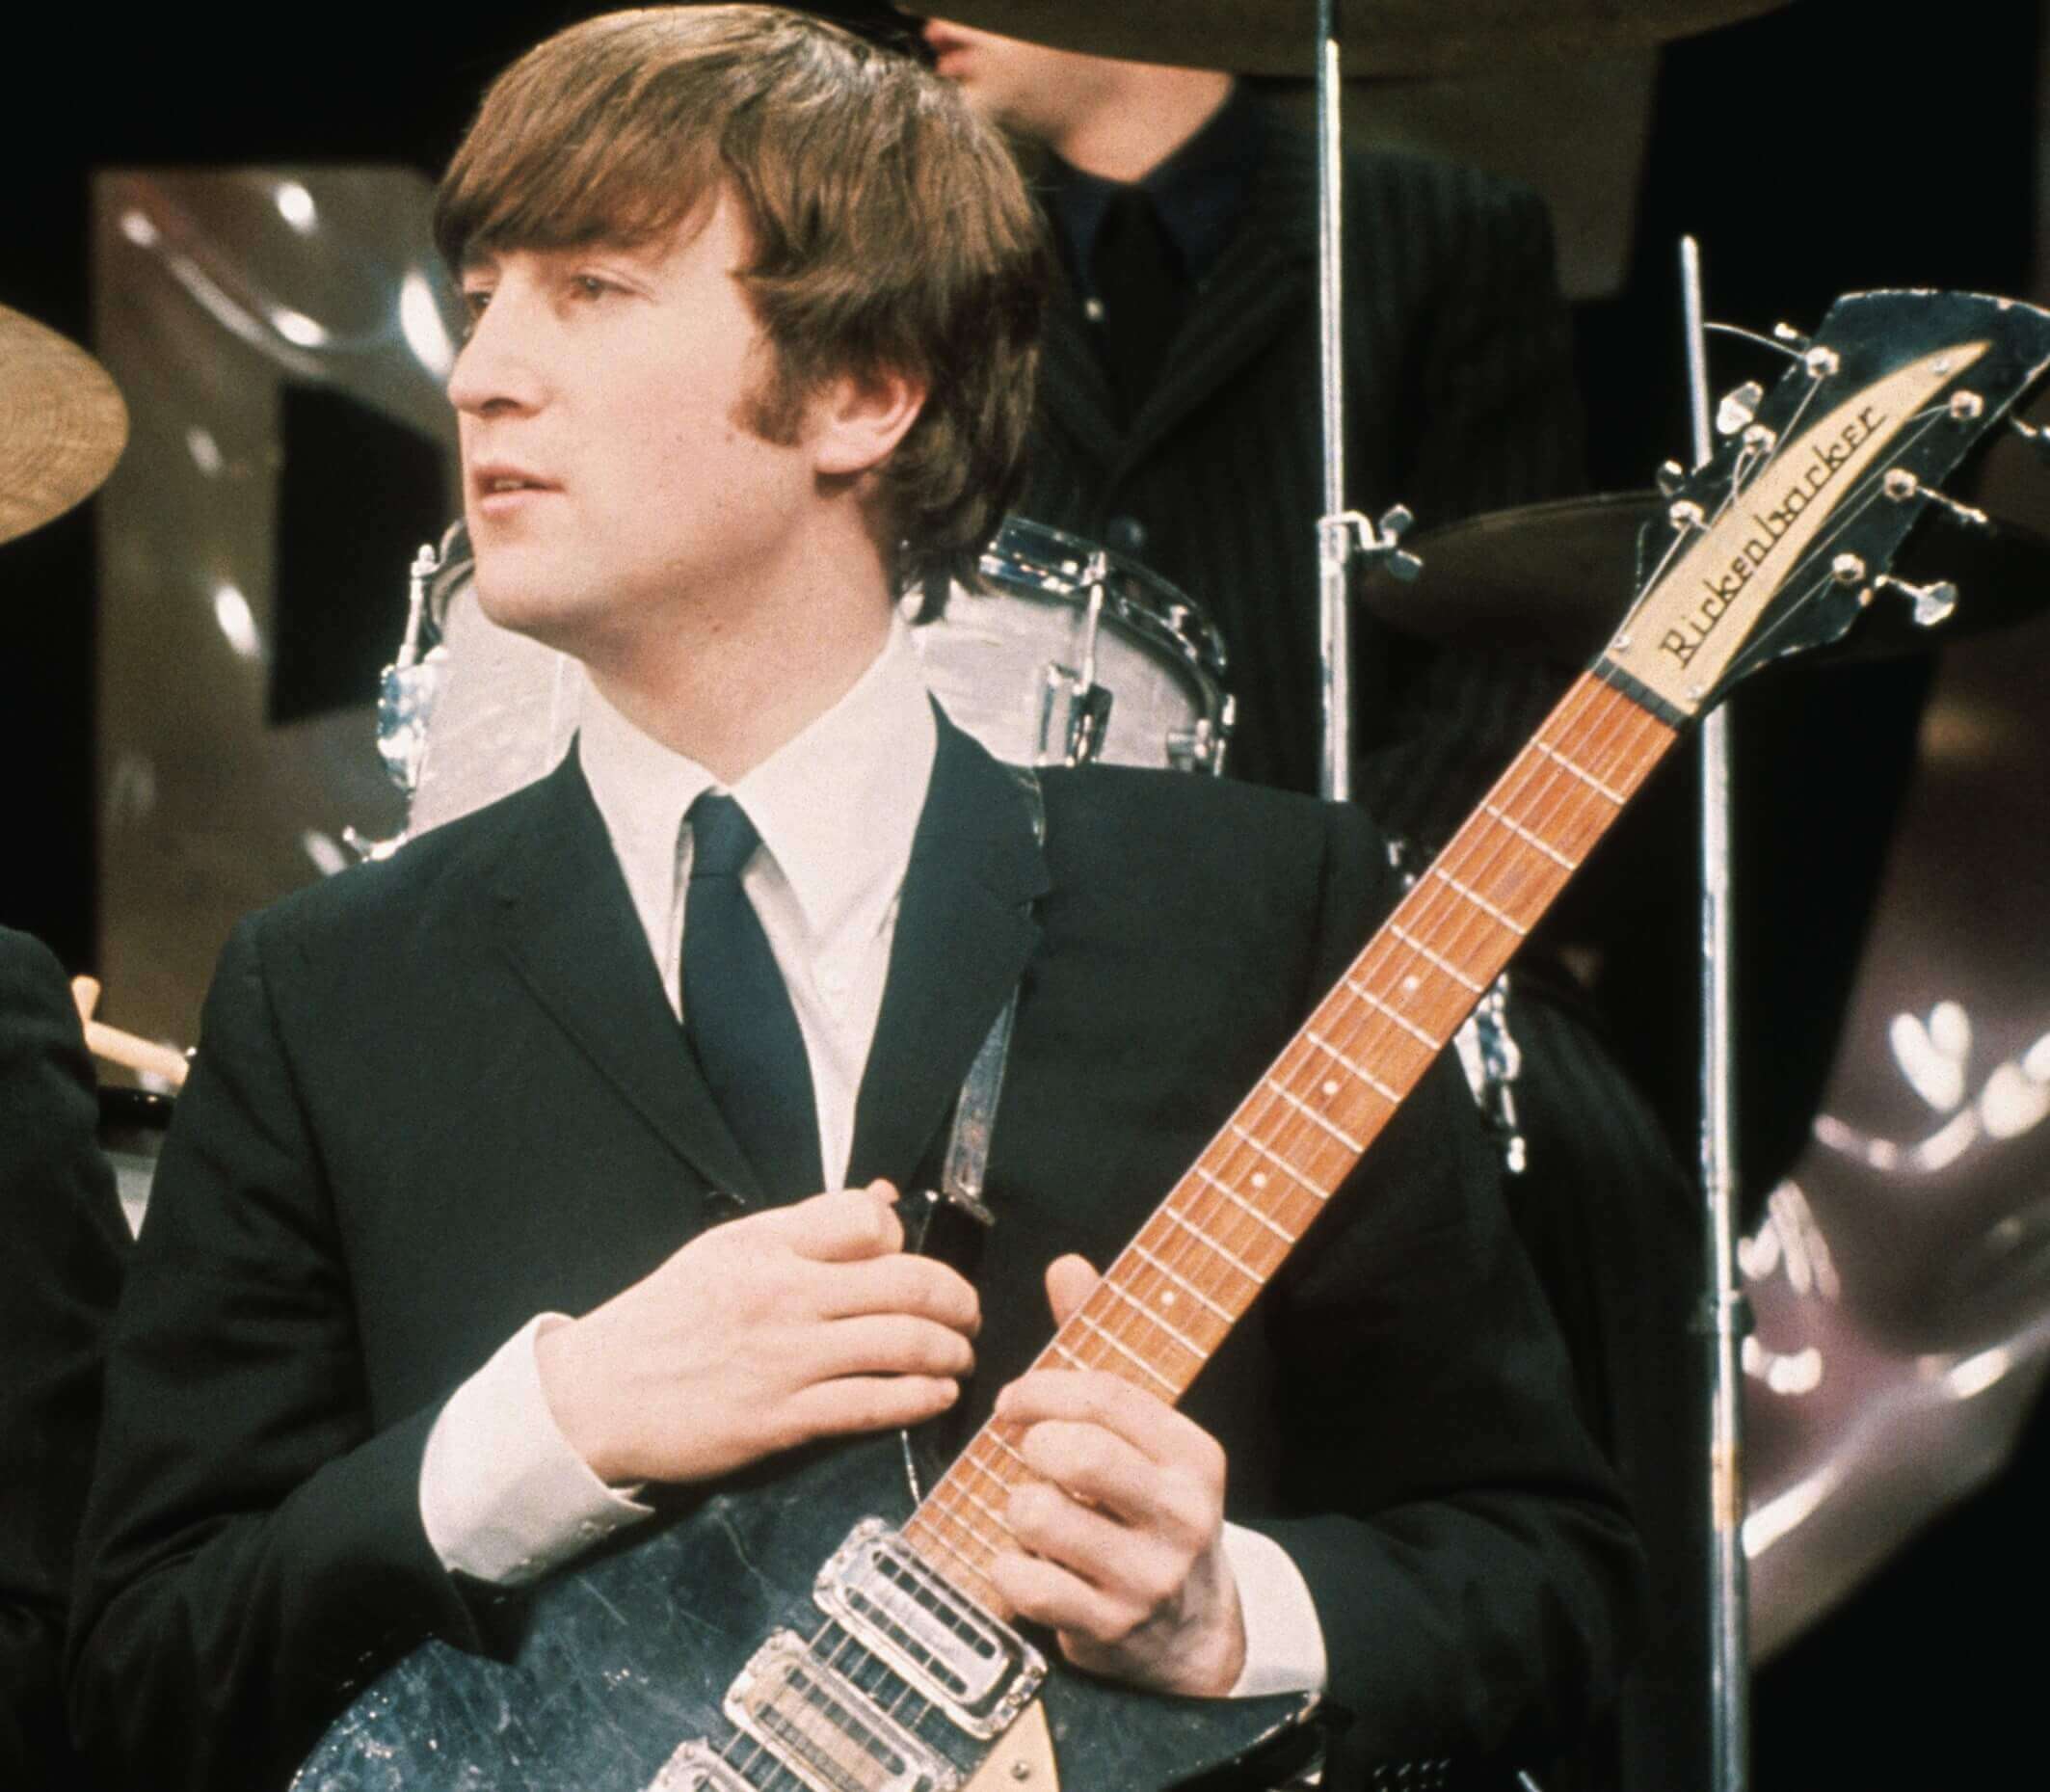 John Lennon holding a guitar